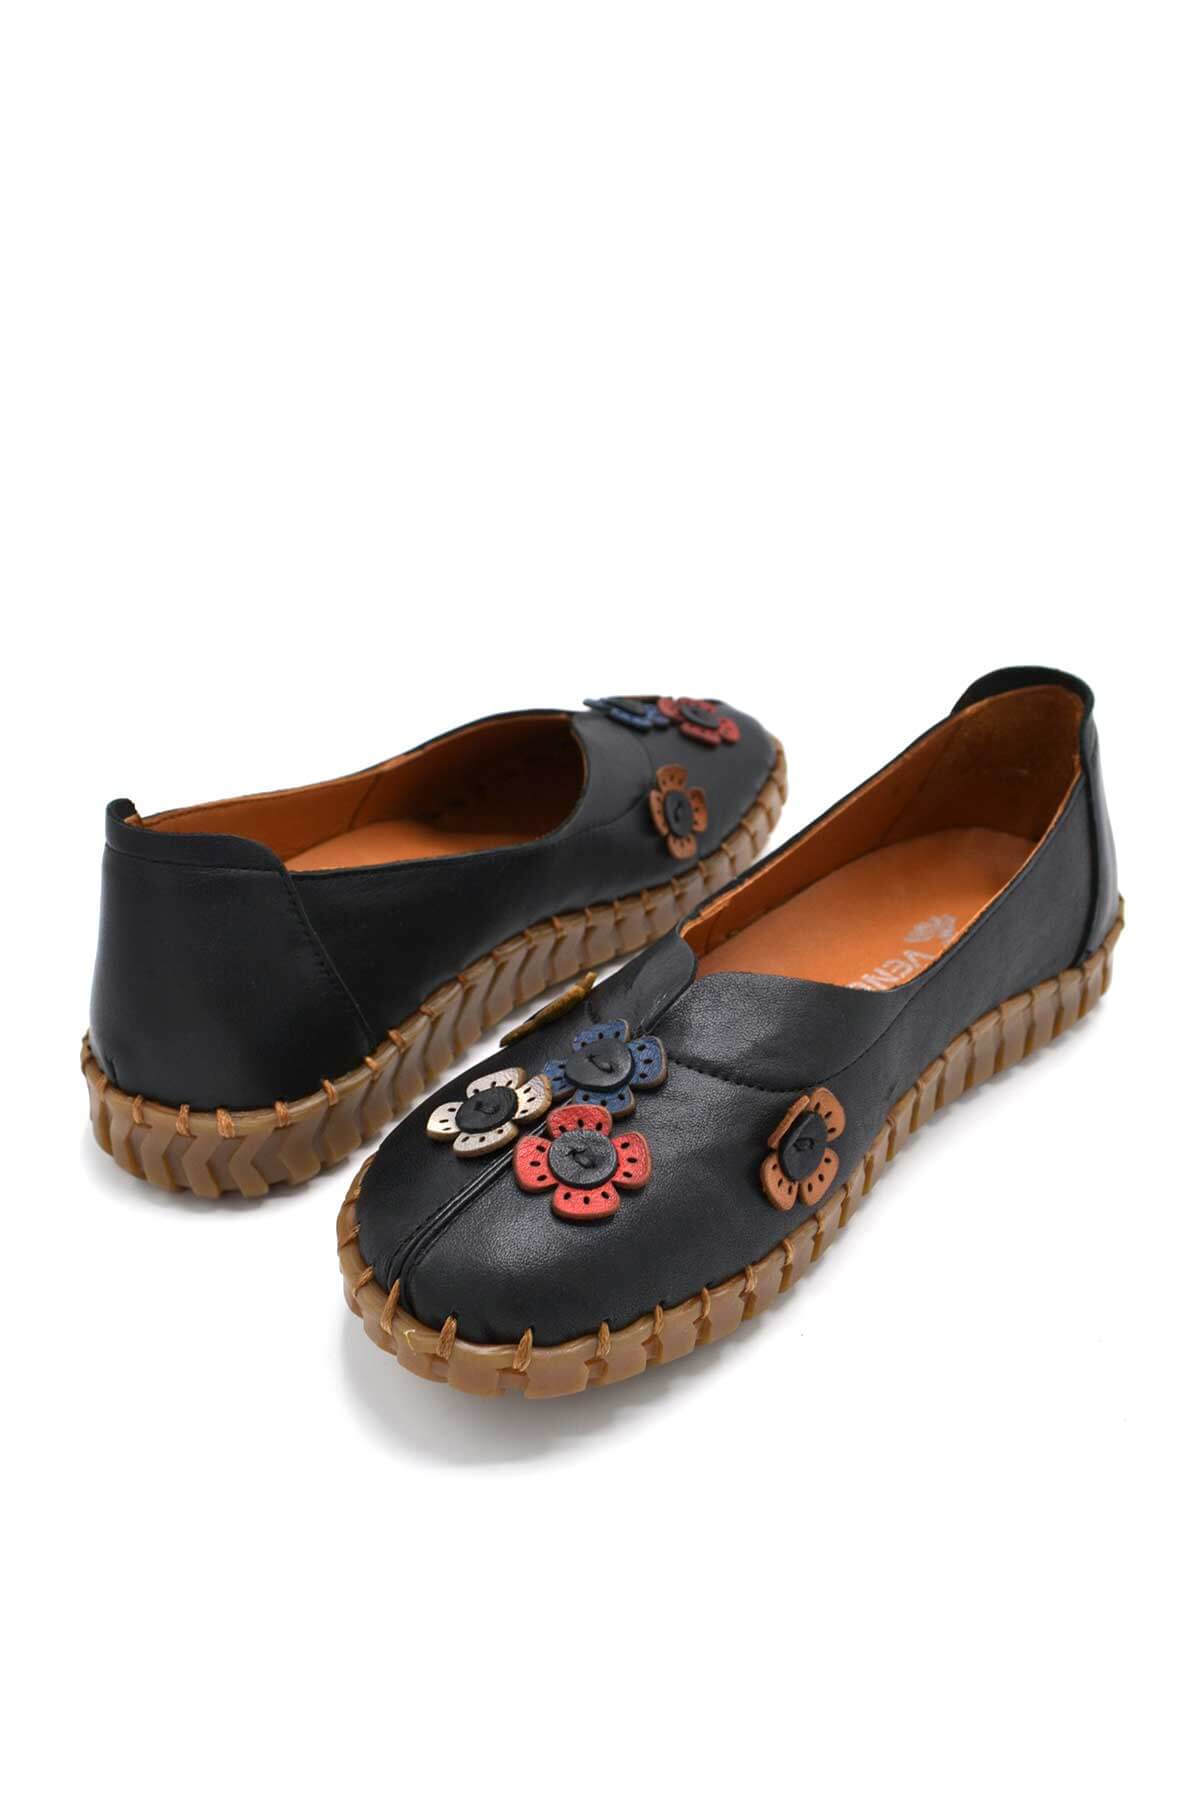 Kadın Comfort Deri Ayakkabı Siyah 2010711Y